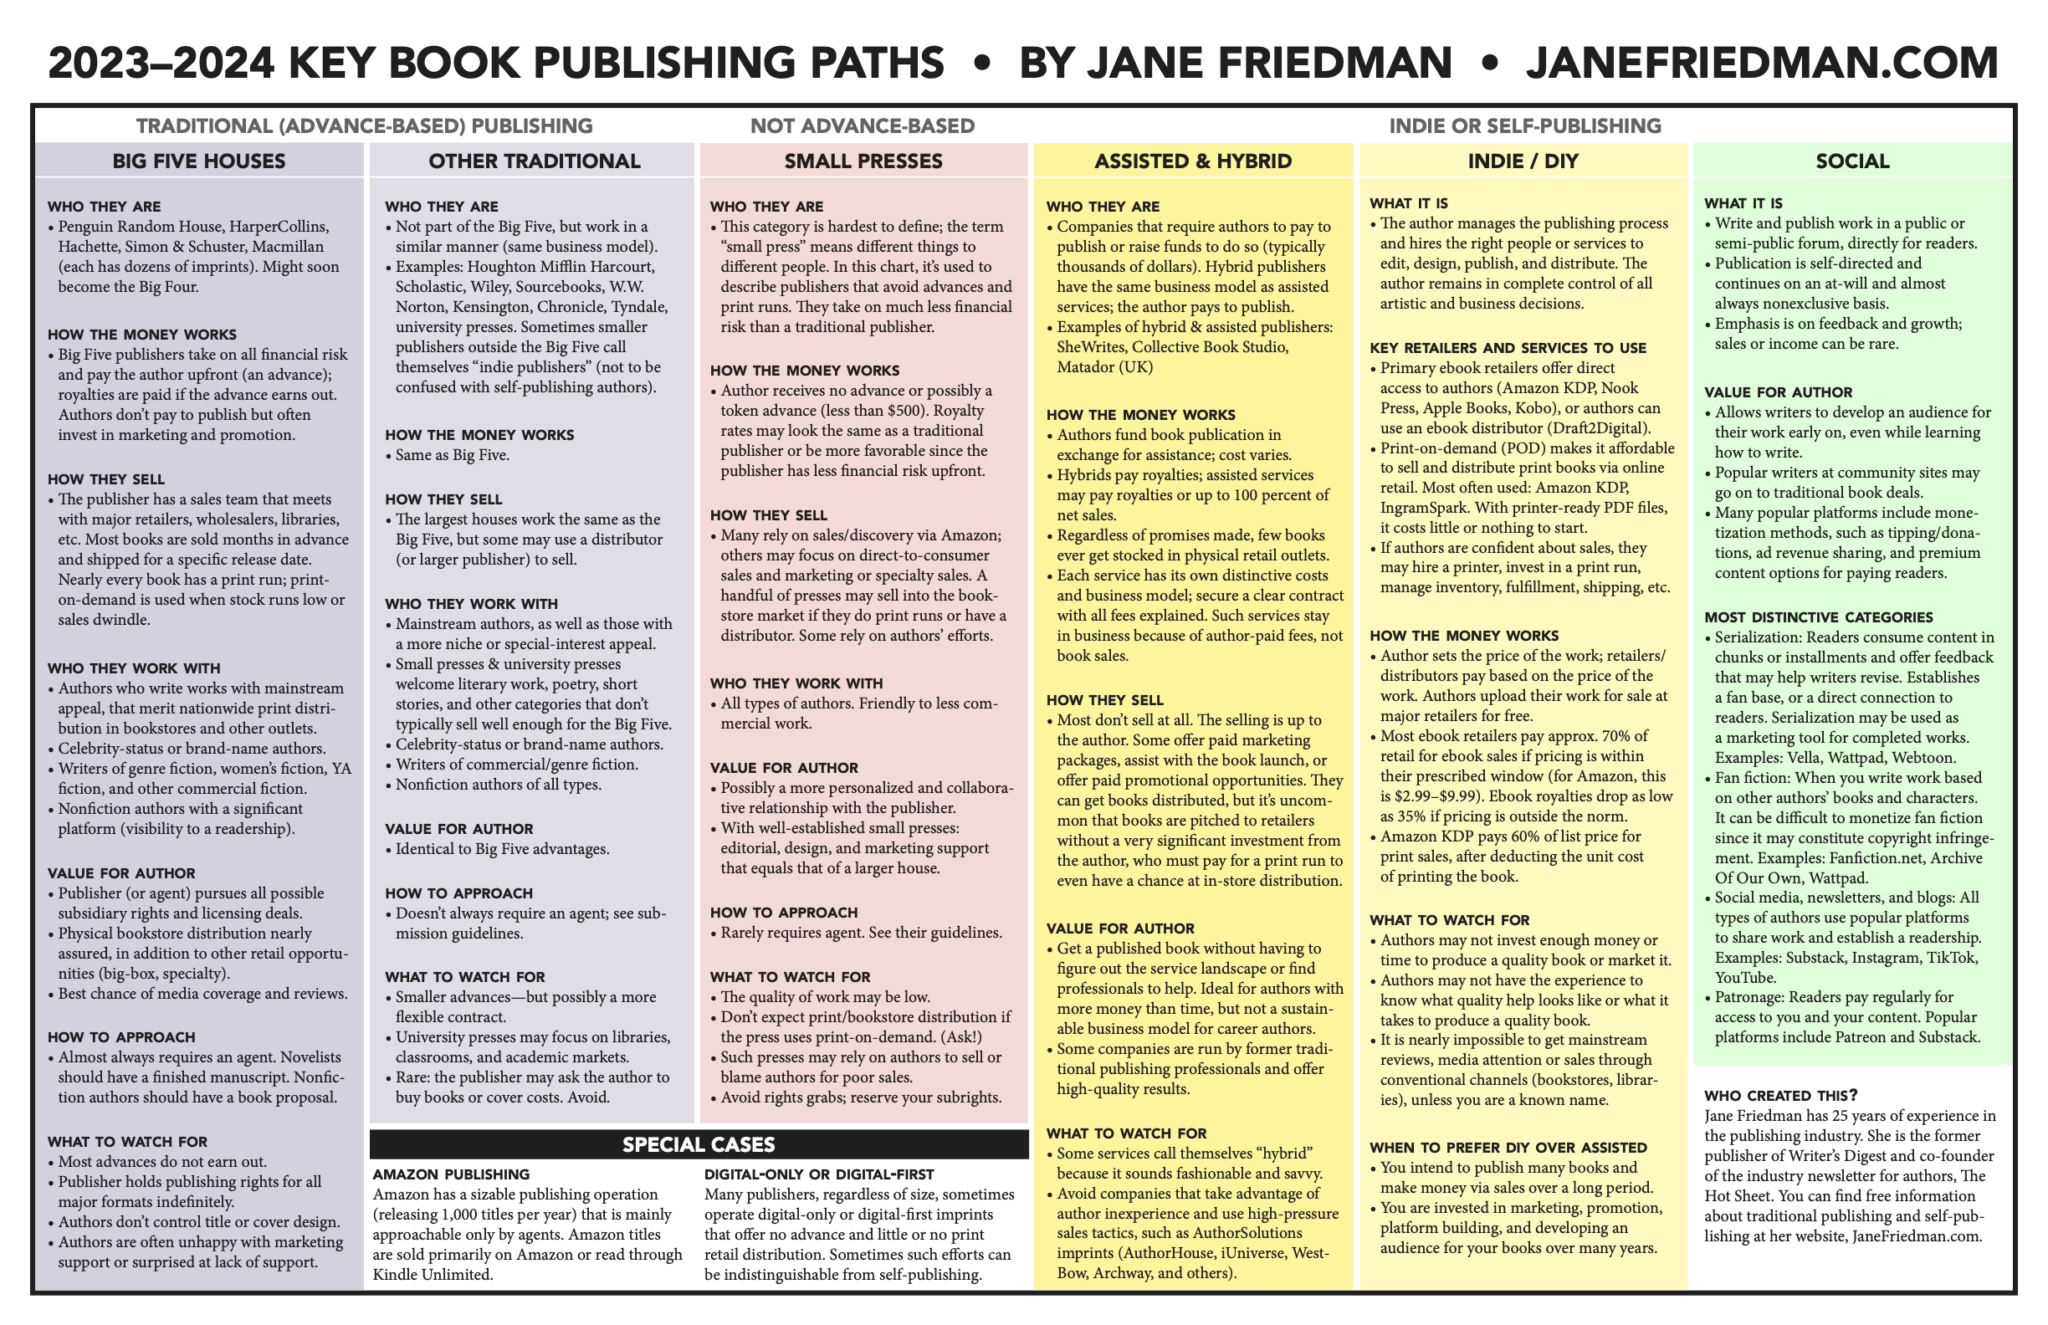 Hybrid Publishing and other publishing paths